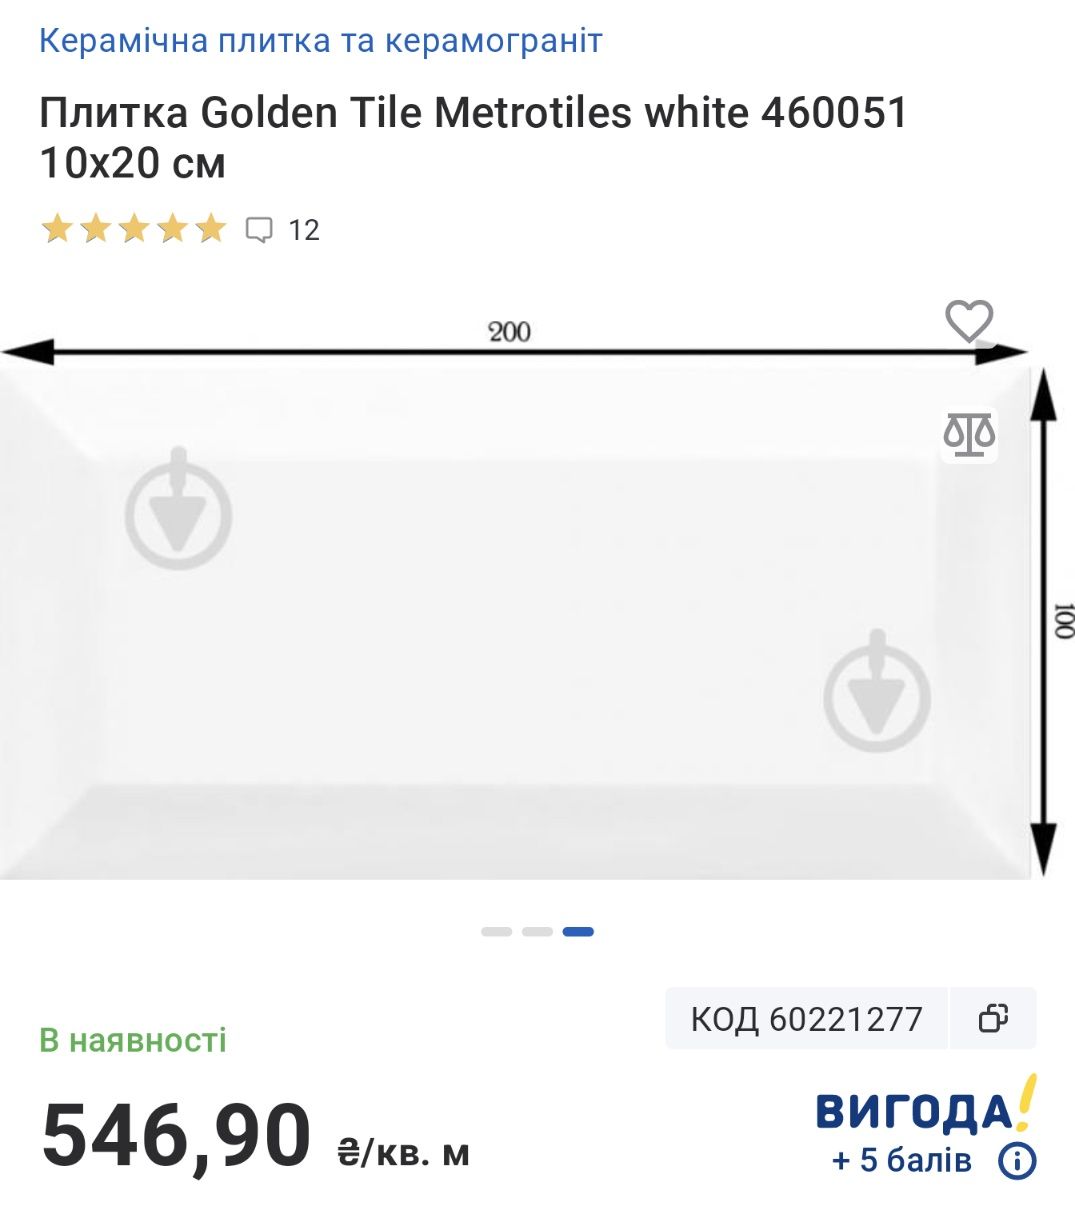 Плитка  Golden Tile Metrotiles white 460051